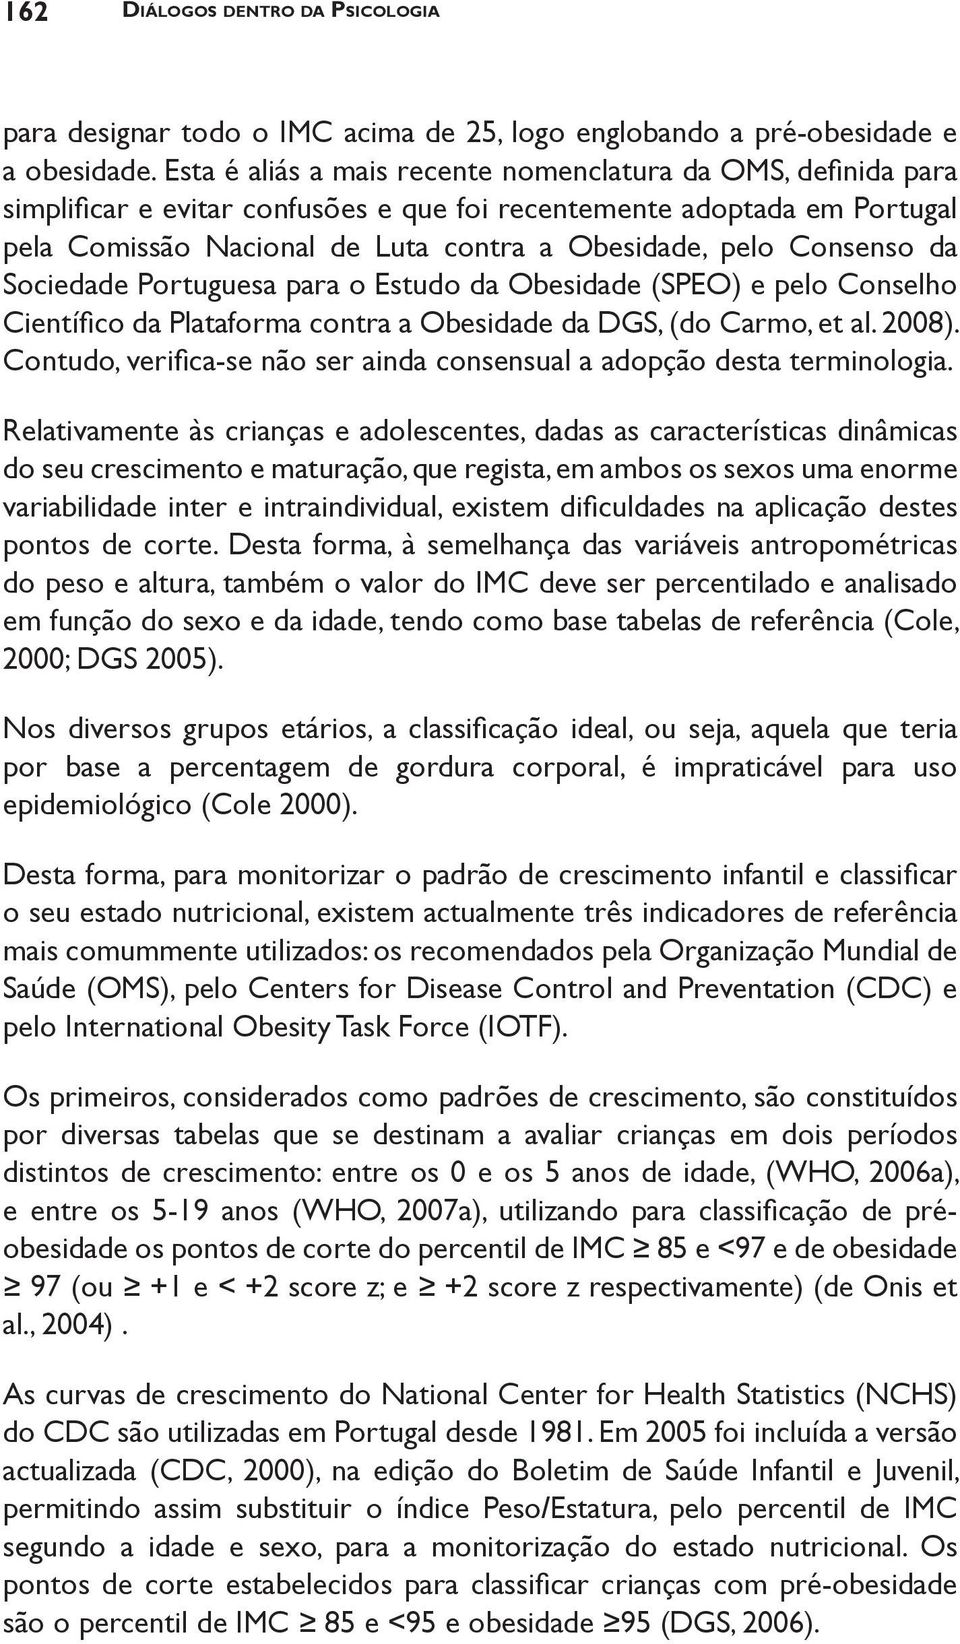 Consenso da Sociedade Portuguesa para o Estudo da Obesidade (SPEO) e pelo Conselho Científico da Plataforma contra a Obesidade da DGS, (do Carmo, et al. 2008).